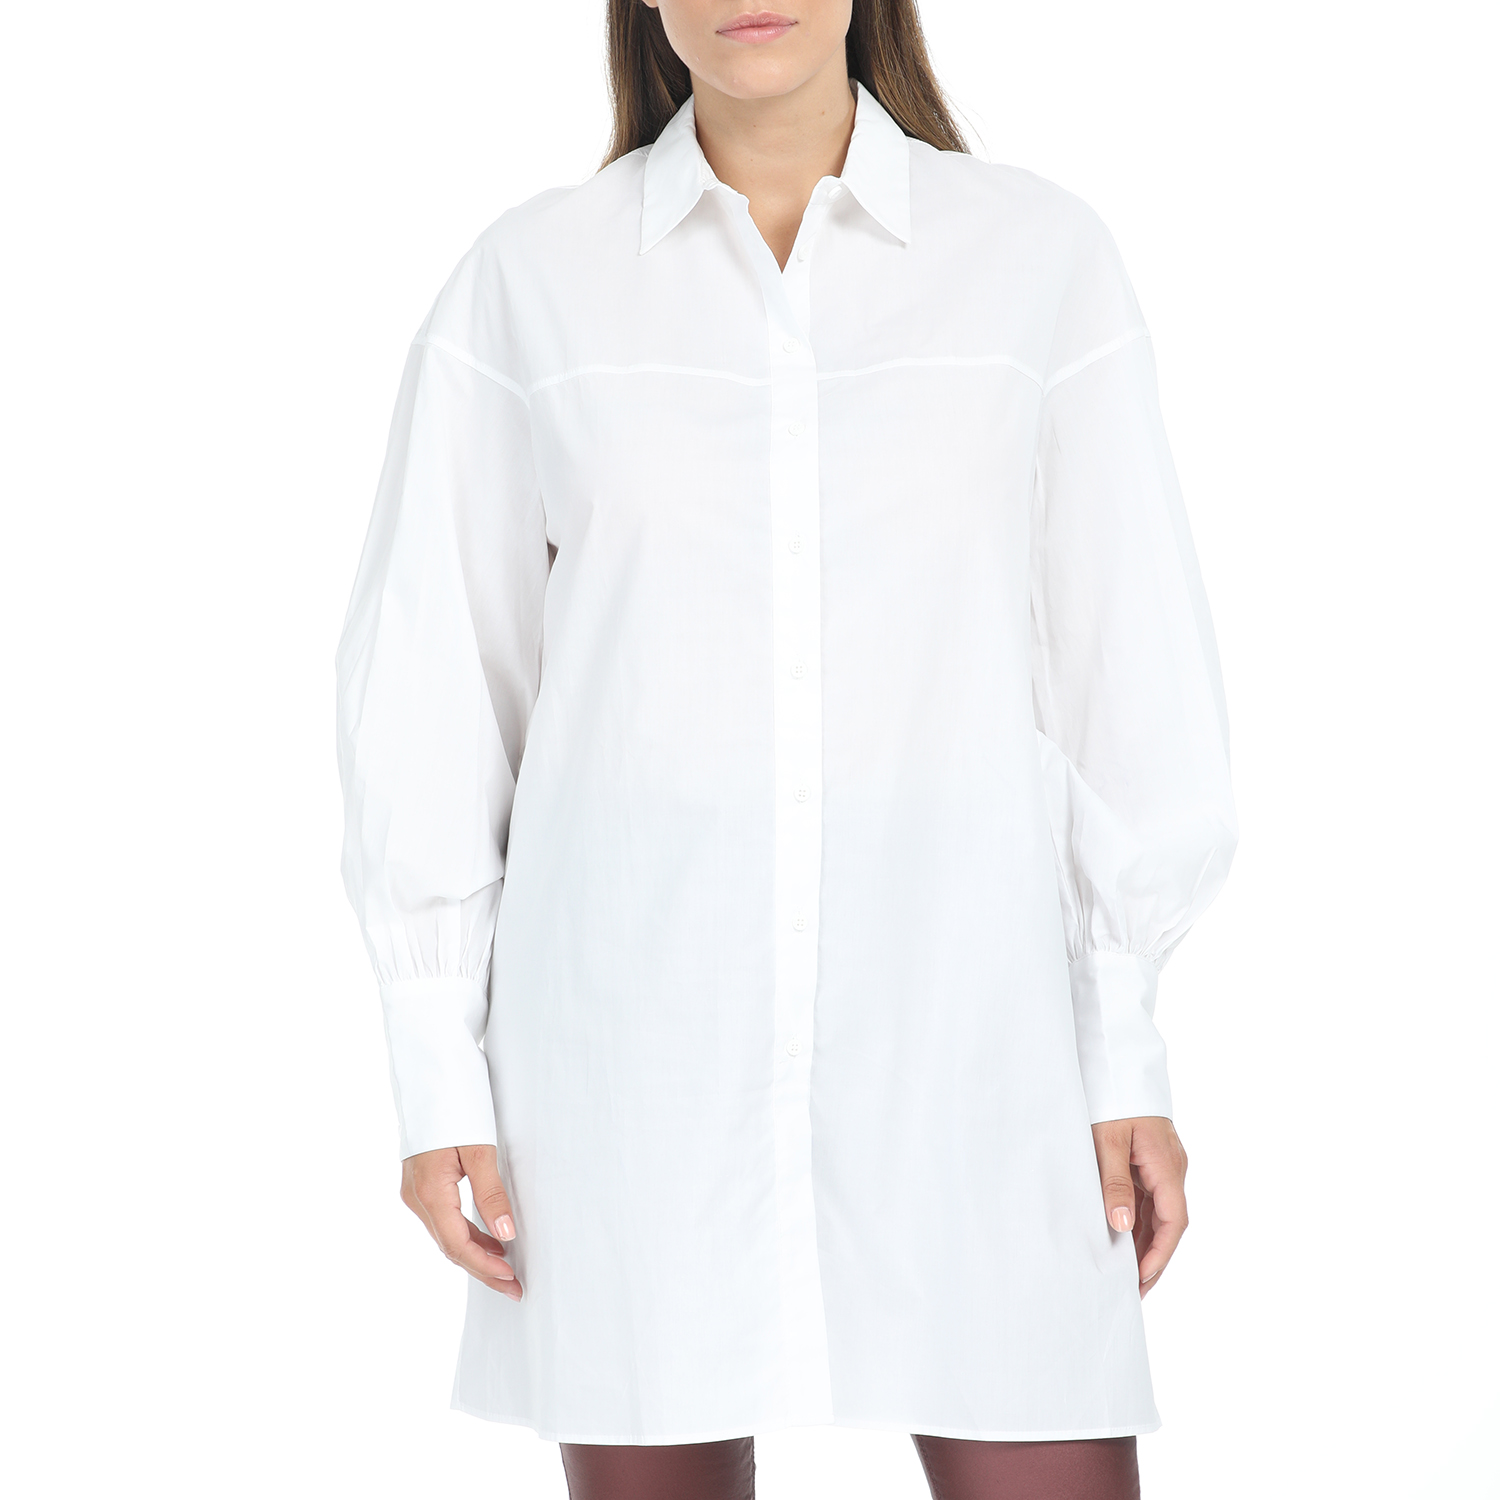 Γυναικεία/Ρούχα/Πουκάμισα/Μακρυμάνικα IMPERIAL - Γυναικείο μακρύ πουκάμισο IMPERIAL λευκό